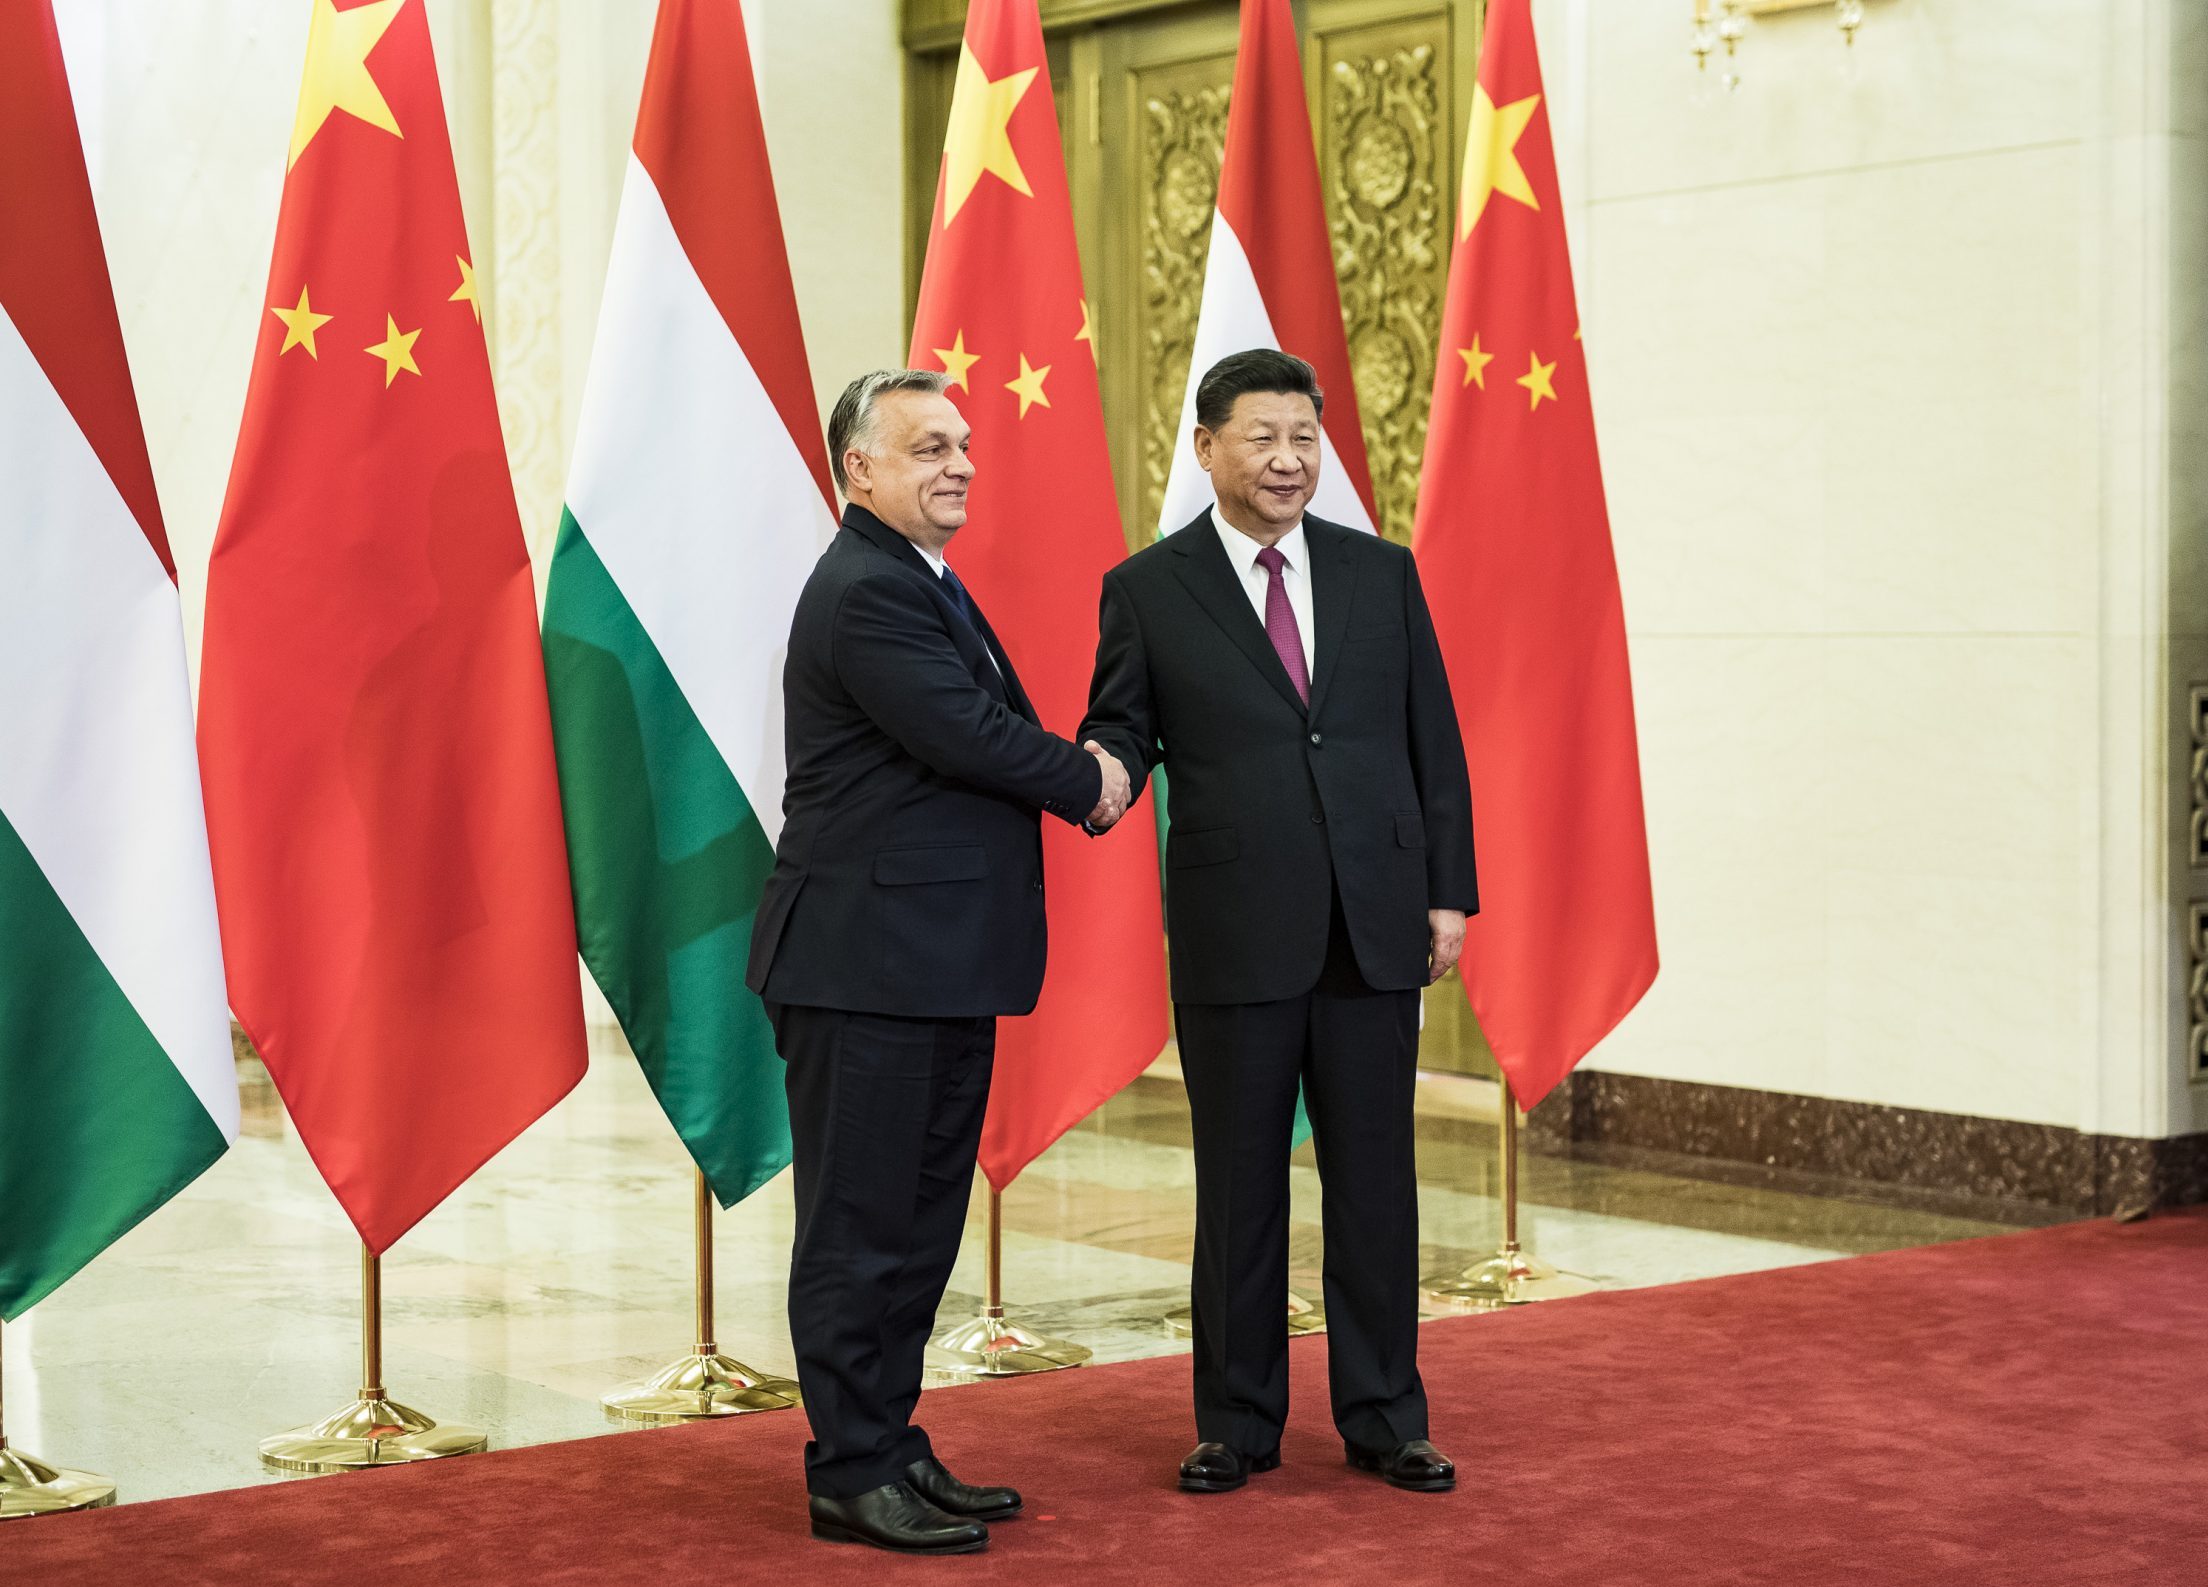 Chinesisch-ungarische Beziehungen haben eine neue Ebene erreicht